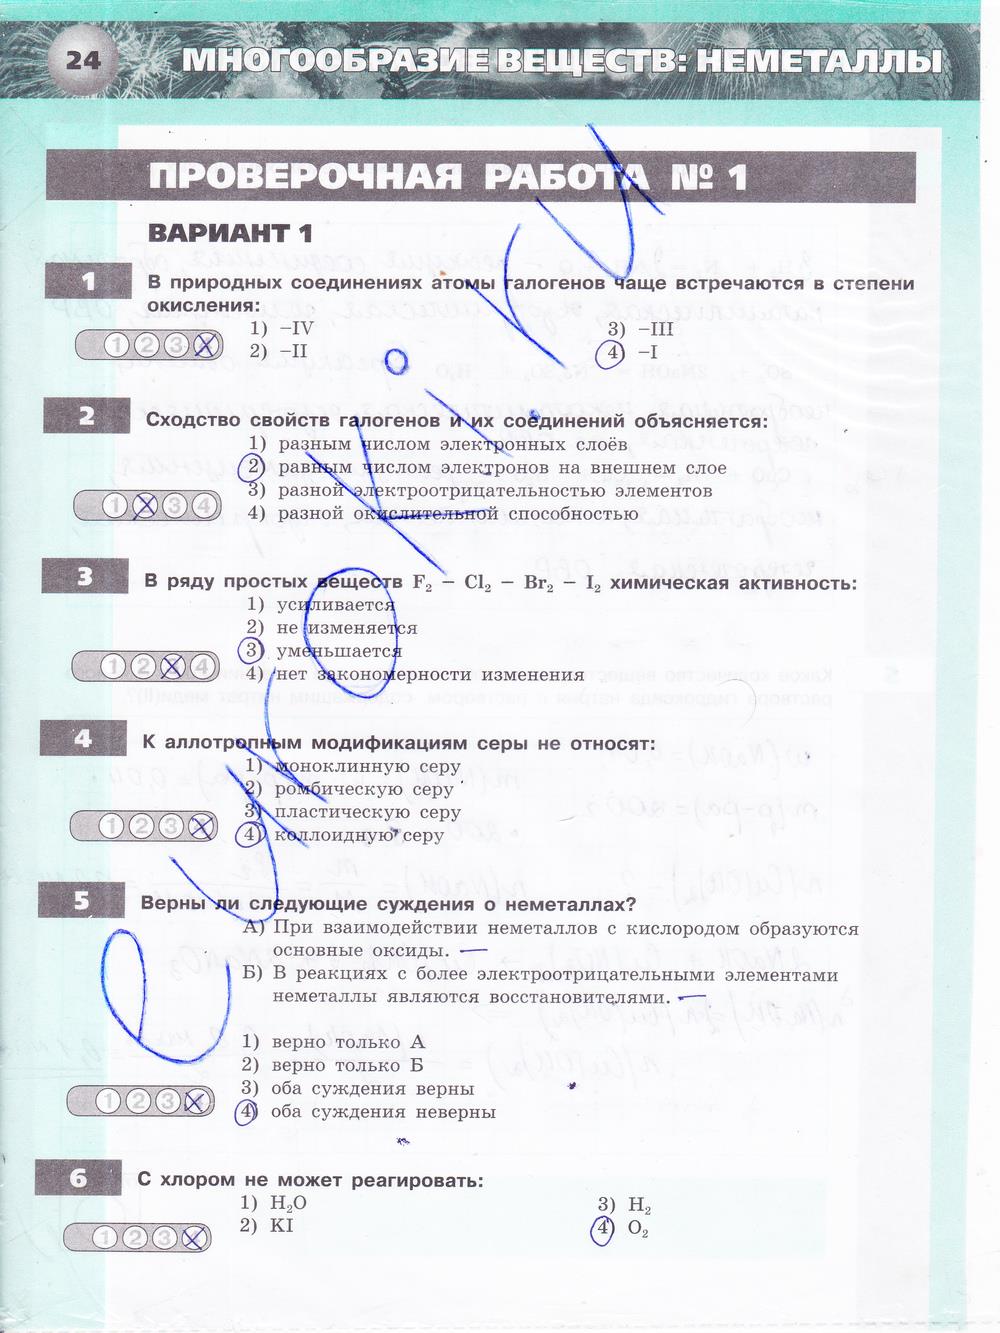 гдз 9 класс тетрадь-экзаменатор страница 24 химия Бобылева, Бирюлина